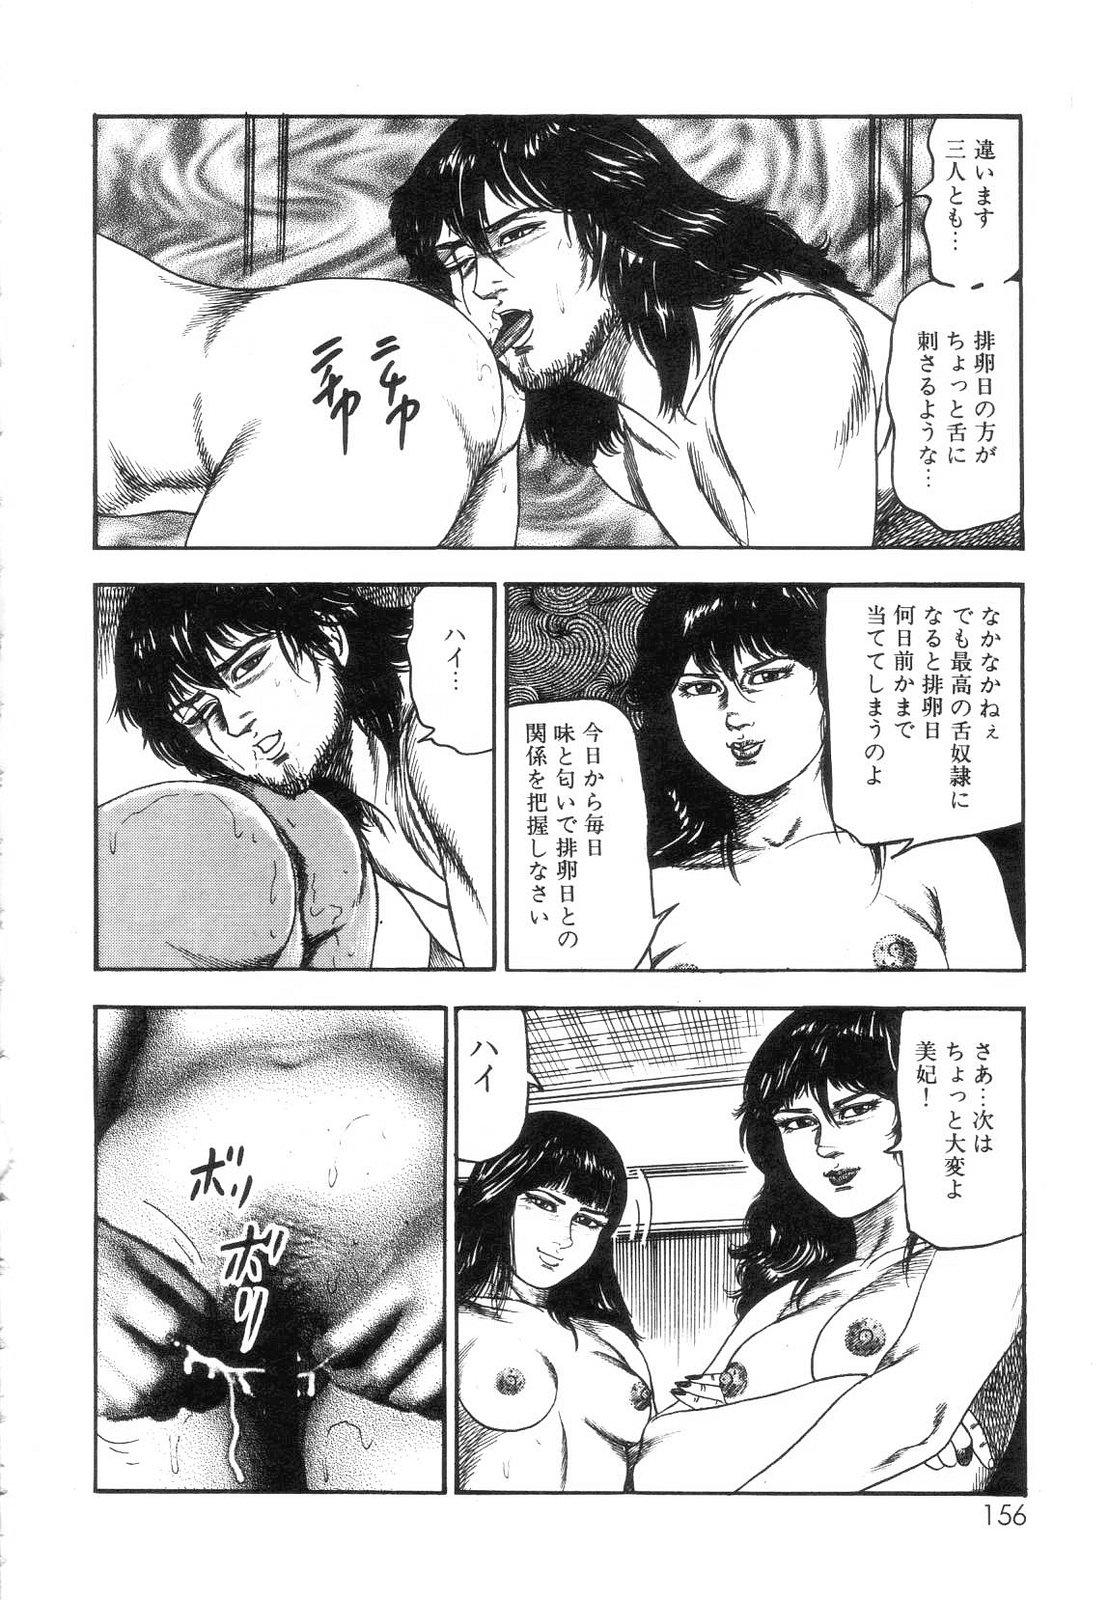 Shiro no Mokushiroku Vol. 7 - Shiiku Ningyou Erika no Shou 157